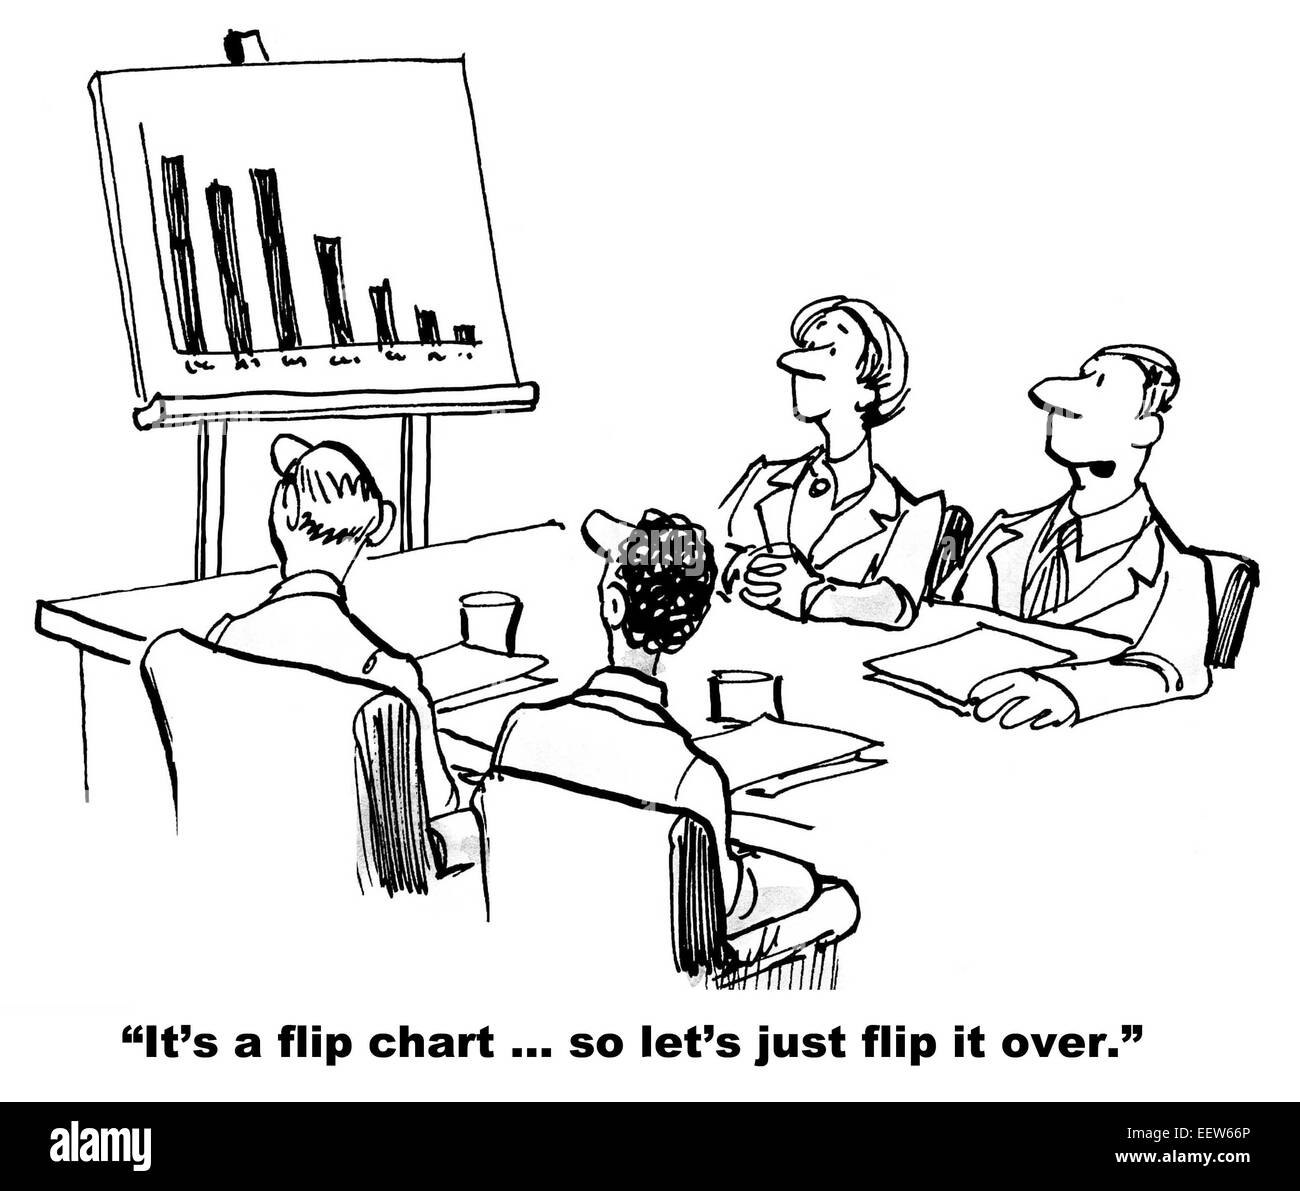 Karikatur von Geschäftstreffen und Diagramm mit negativem Ergebnis, Mann sagt "Es ist ein Flip-Chart... also lasst uns einfach umdrehen". Stockfoto